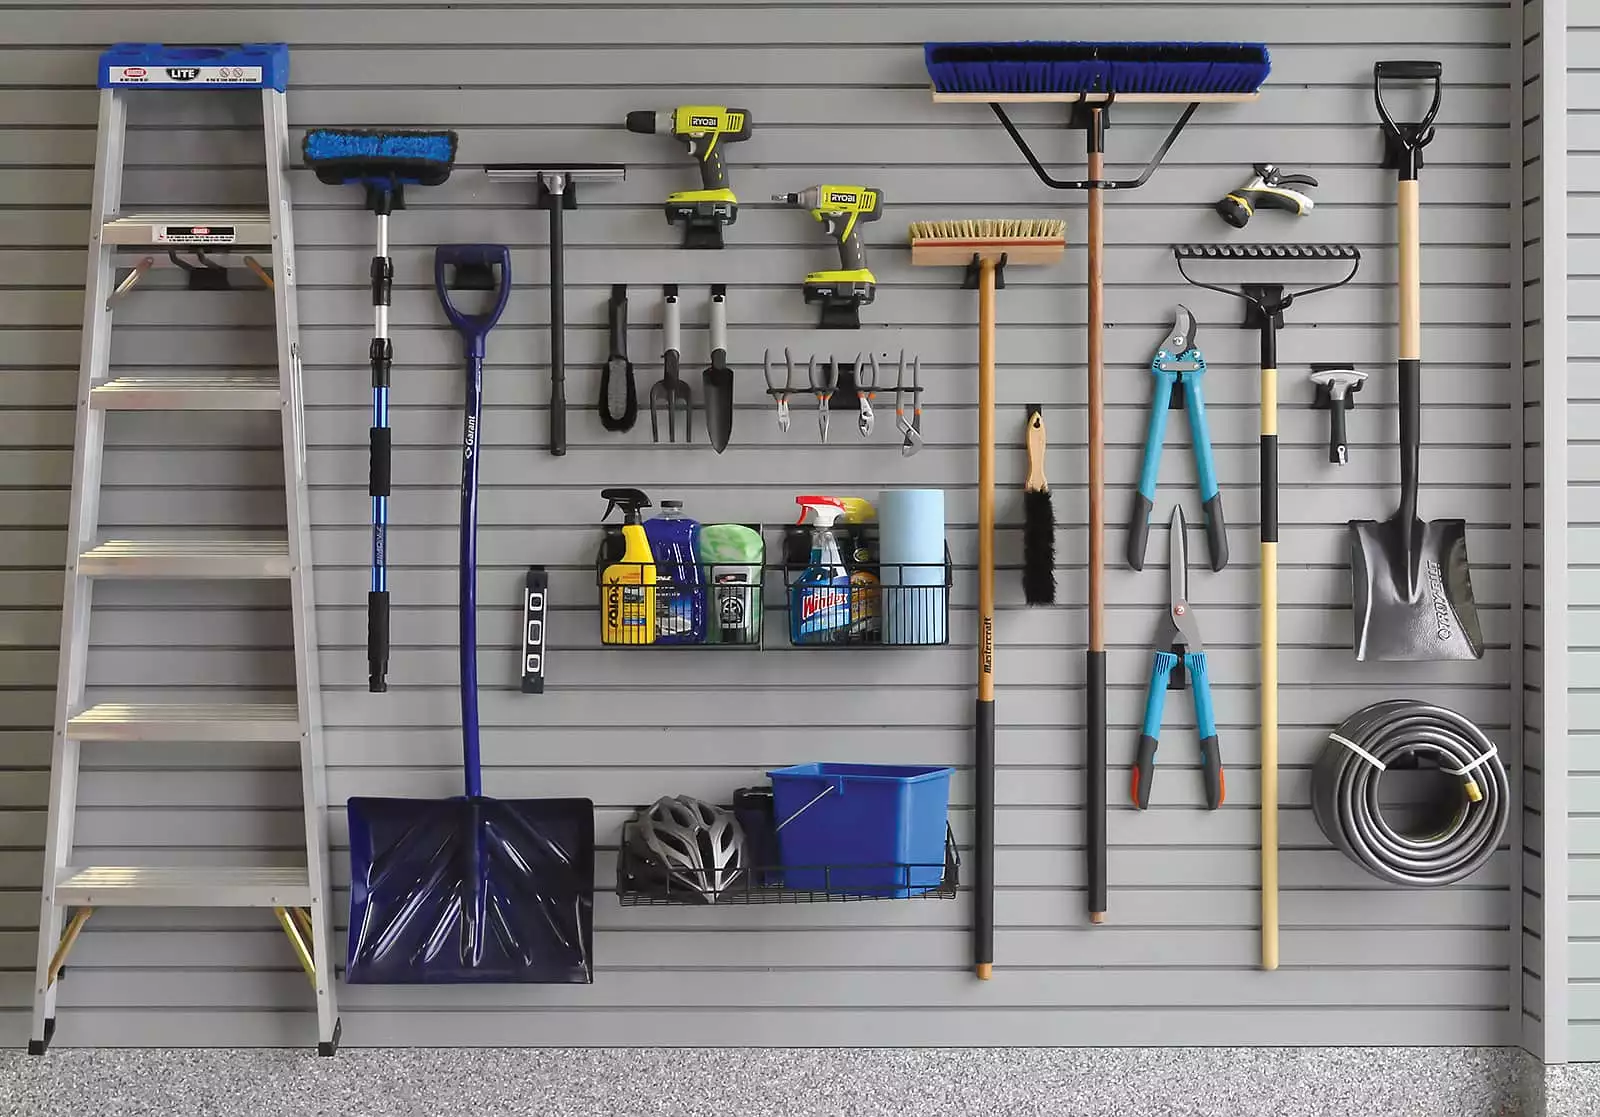 xgarage-slatwall-wall-storage-ladders-shovels-brooms.jpg.pagespeed.ic.WiZNfCMk-J-1